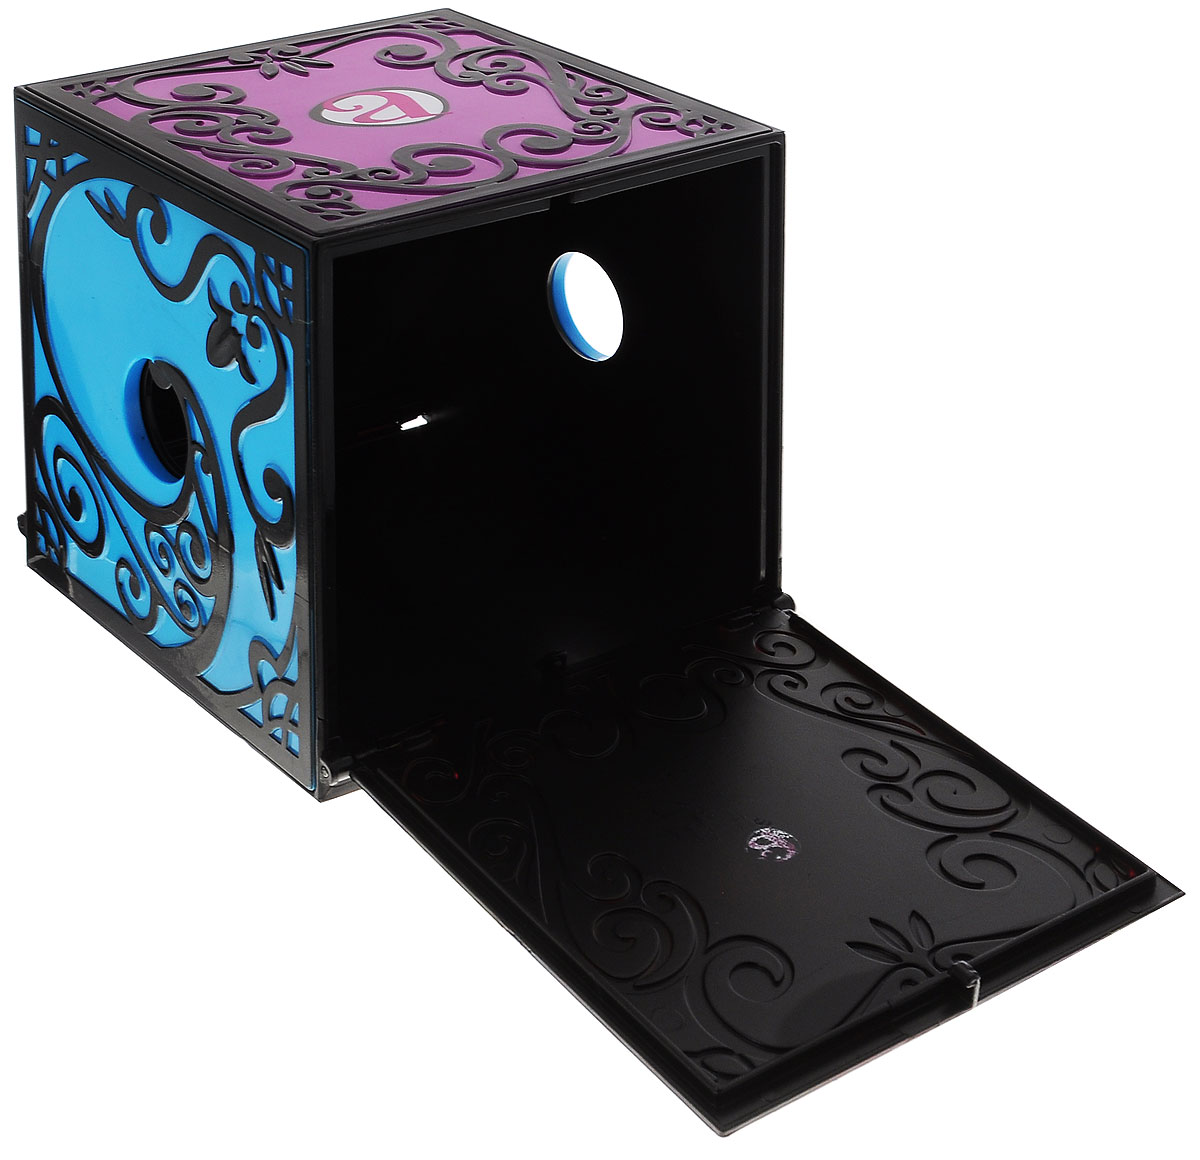 Ящик фокусника. Amazing Zhus 26230 удивительные жу коробка для фокуса с исчезновением. Amazing Zhus ящик фокусы. Ящик с двойным дном для фокусов. Шкатулка фокус.